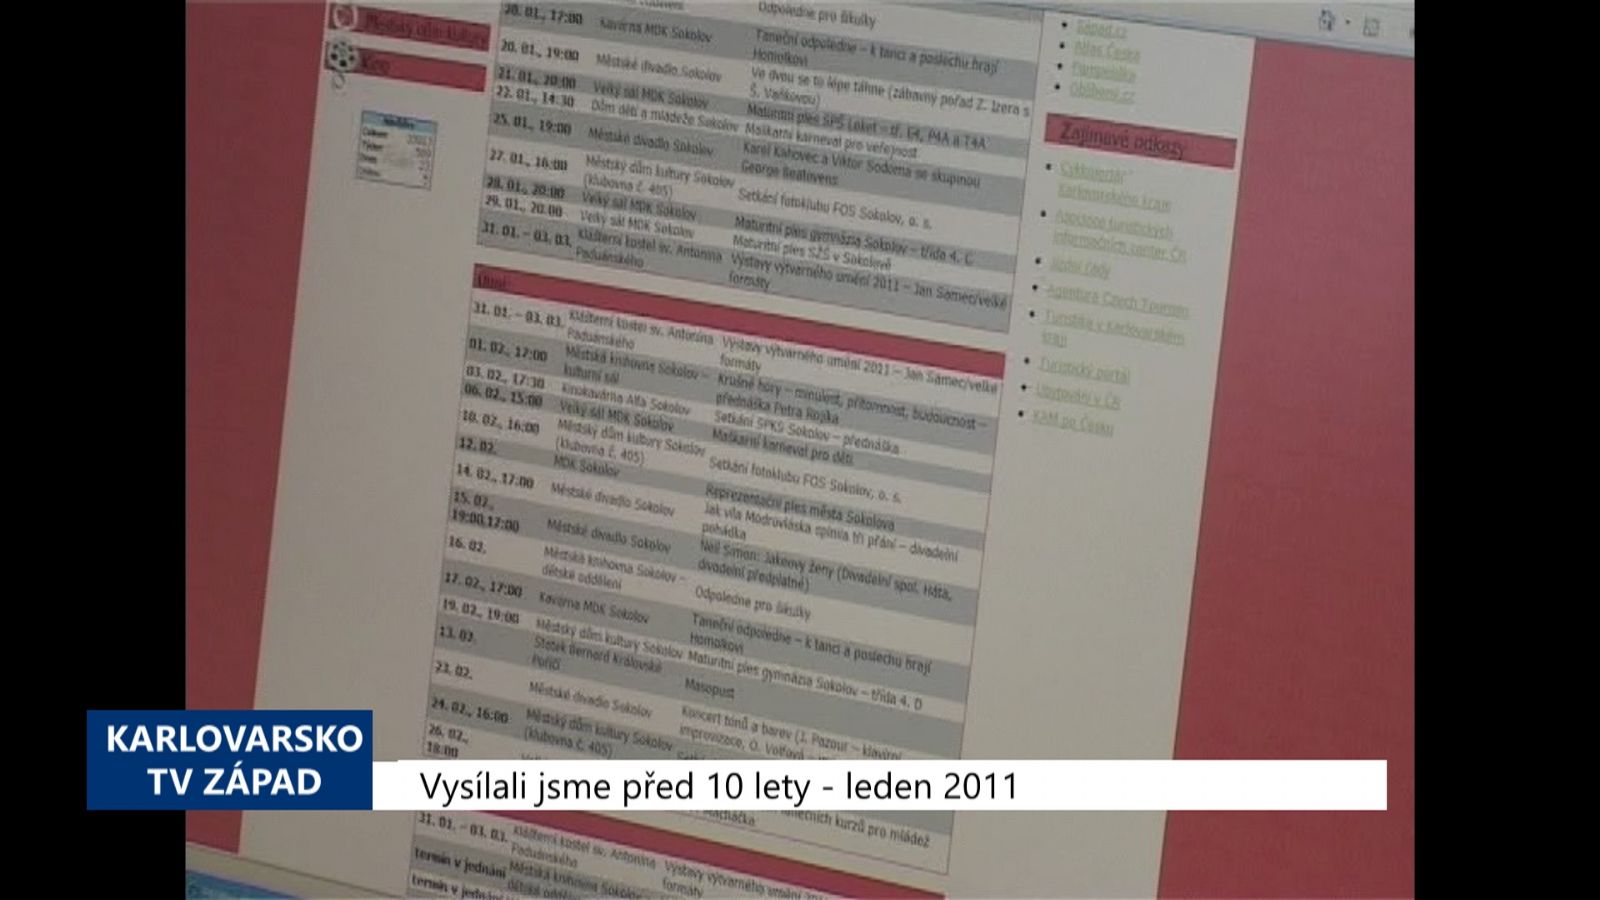 2011 – Sokolov: Pracovní kalendář akcí se osvědčil (4272) (TV Západ)